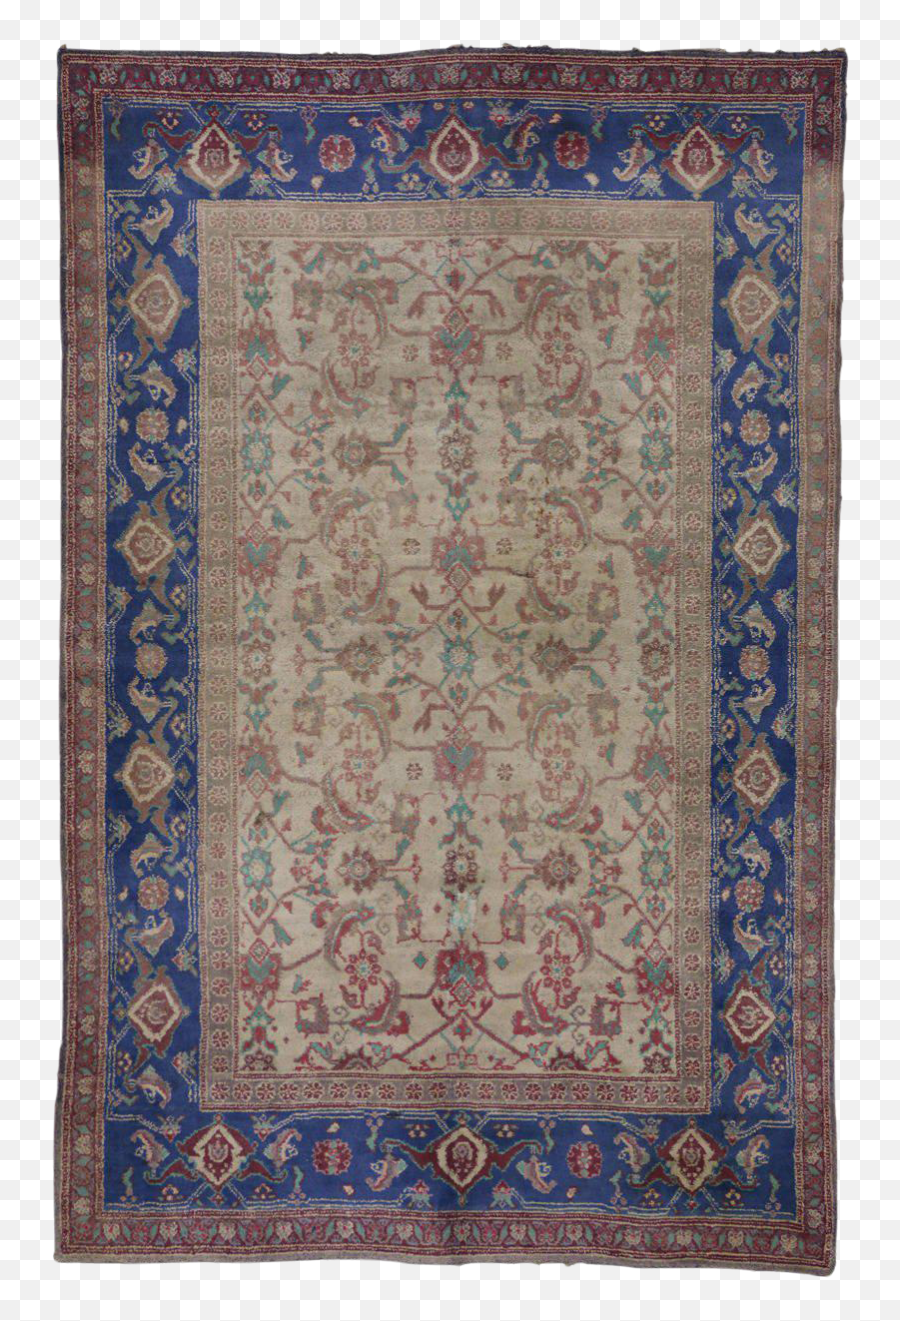 Antique Cotton Indian Agra Carpet With Blue Border - Carpet Png,Blue Border Transparent